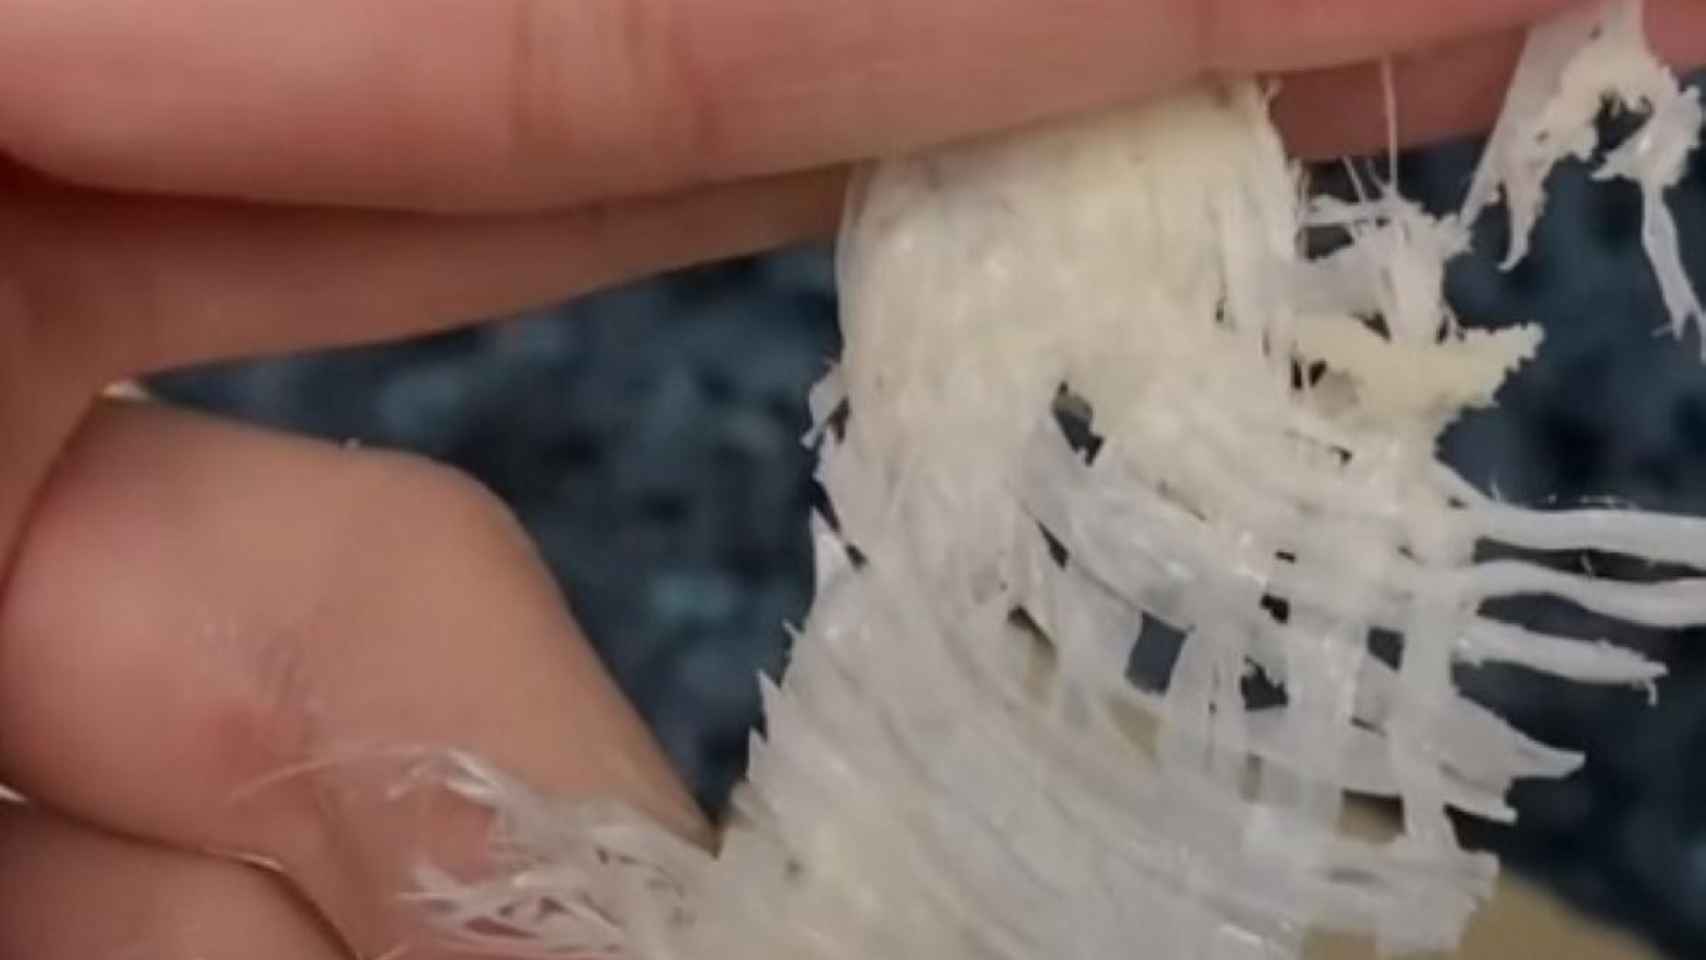 El plástico hallado en una rebanada de pan de molde del Aldi / TWITTER